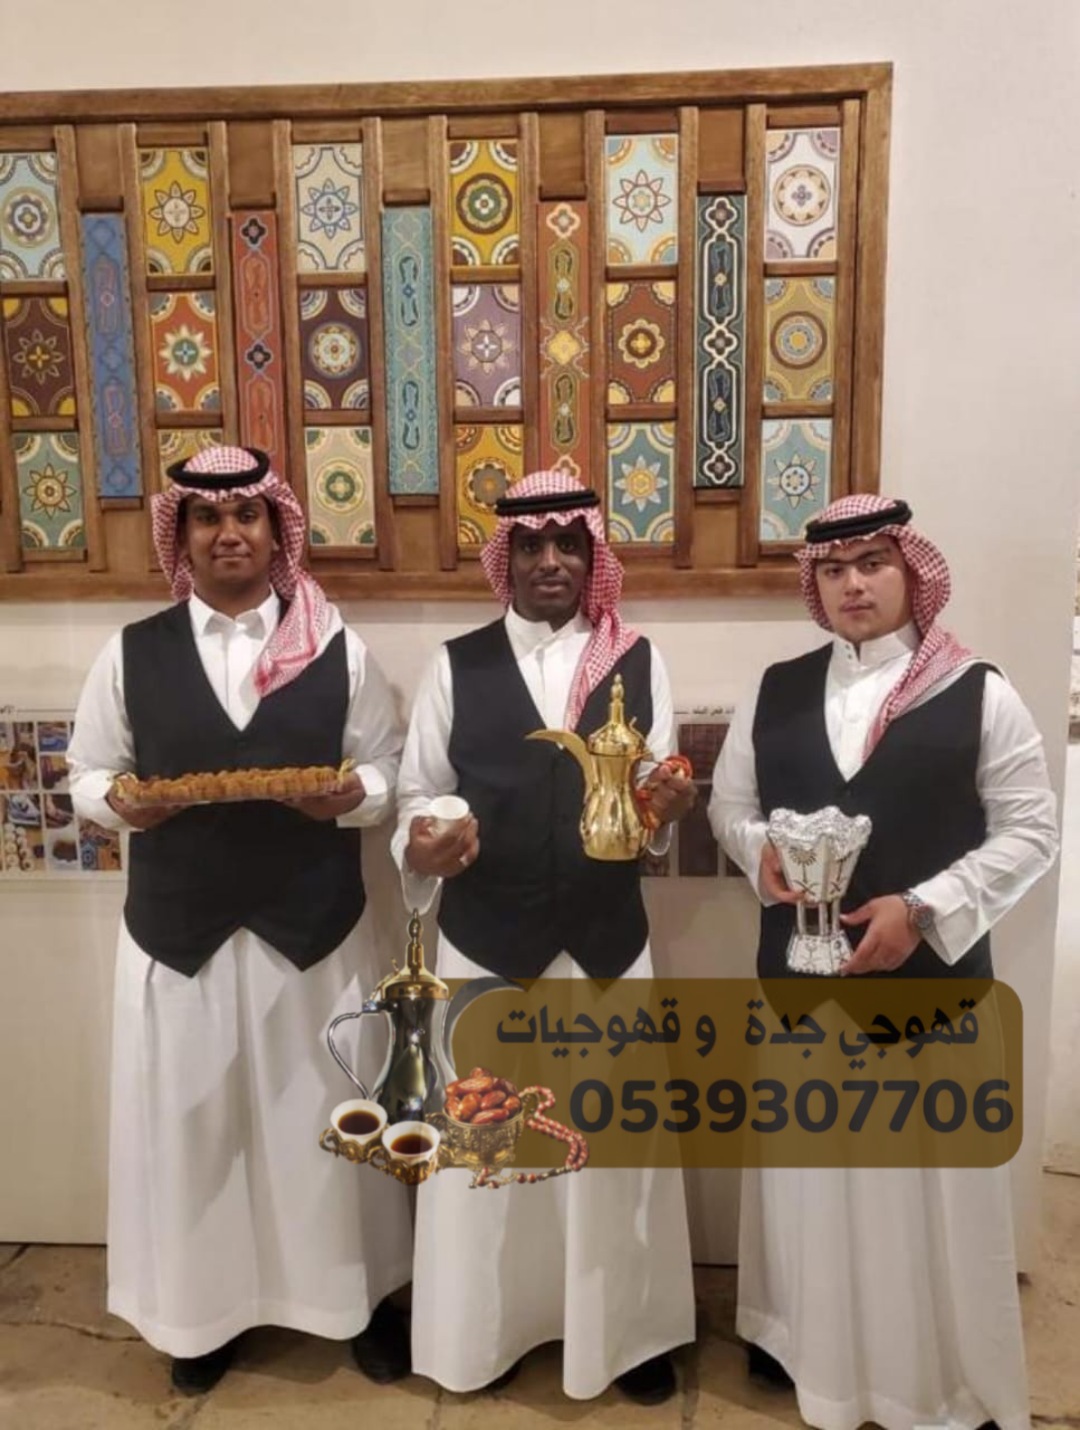 قهوجي قهوجيات صبابات قهوة في جدة, 0539307706